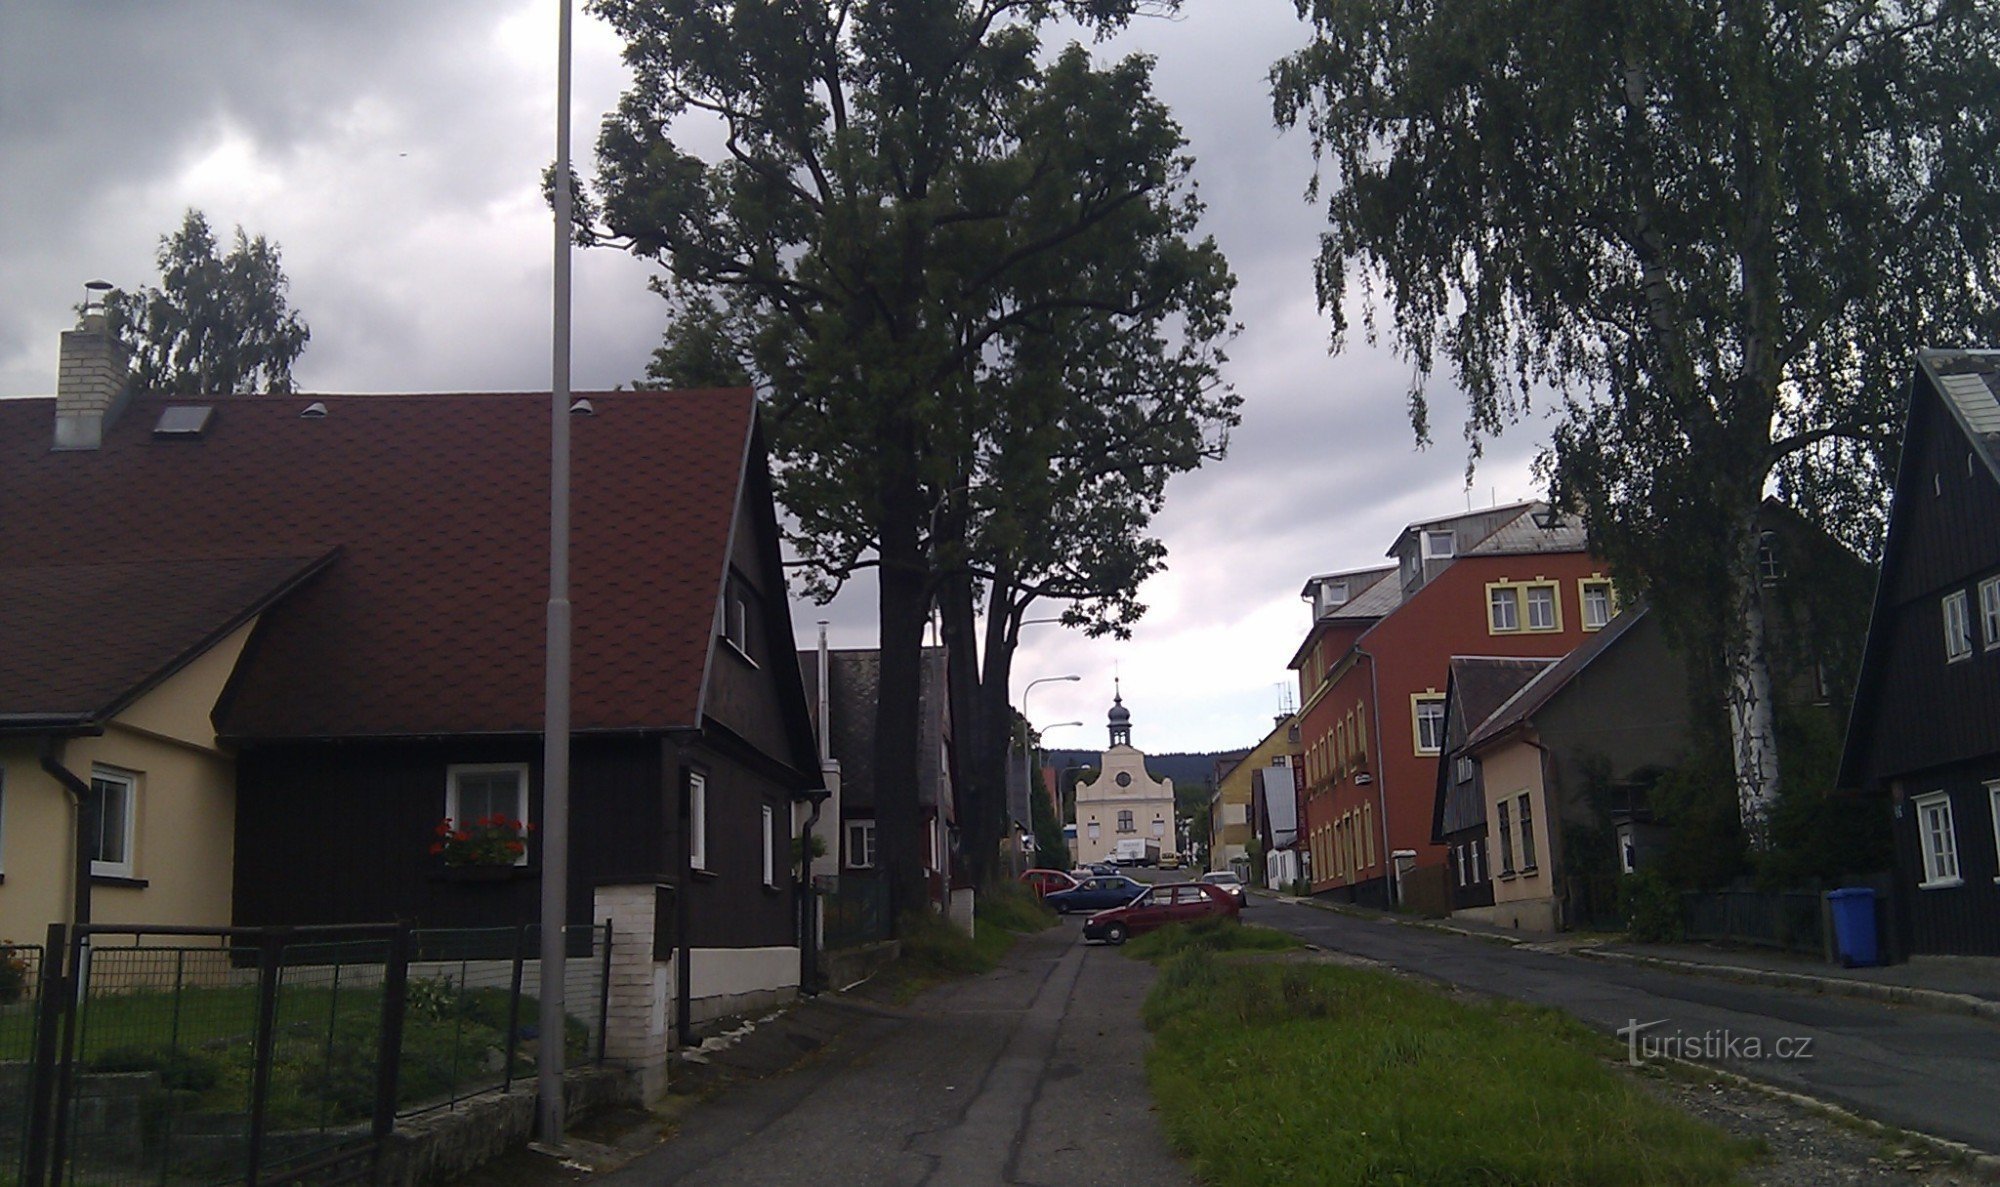 Volgogradska gaden, Liberec